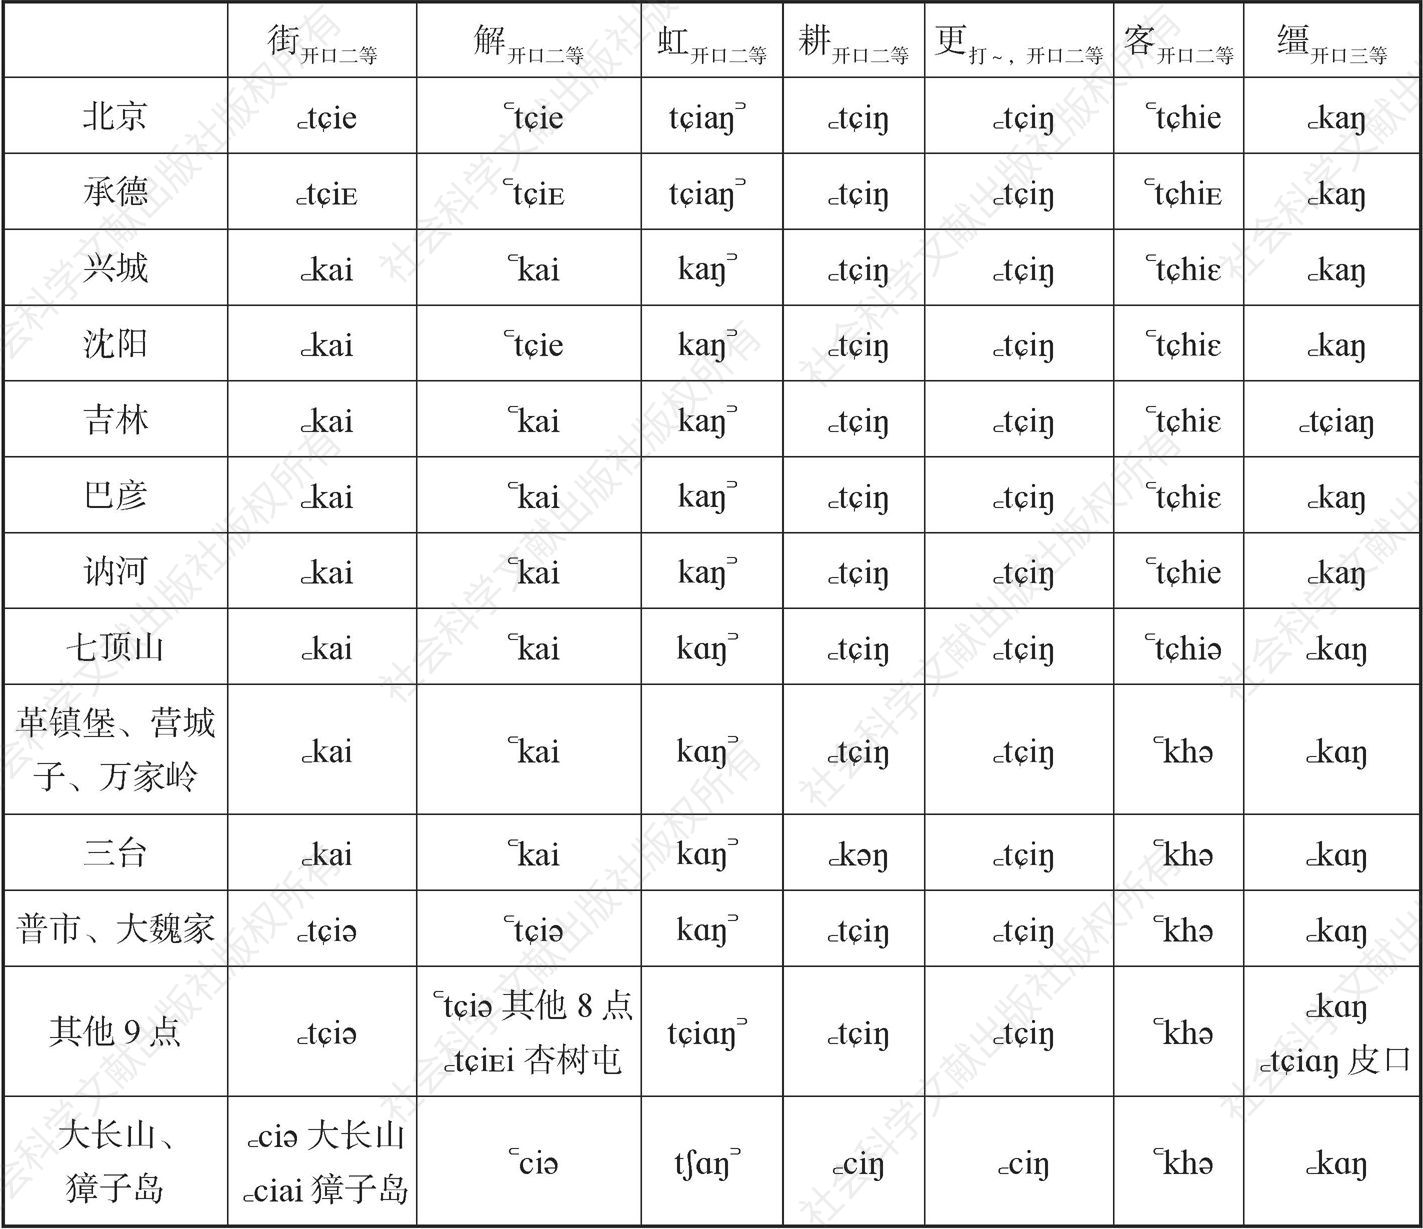 表3-3-1 部分见晓组字在北京官话和大连方言中读音对照